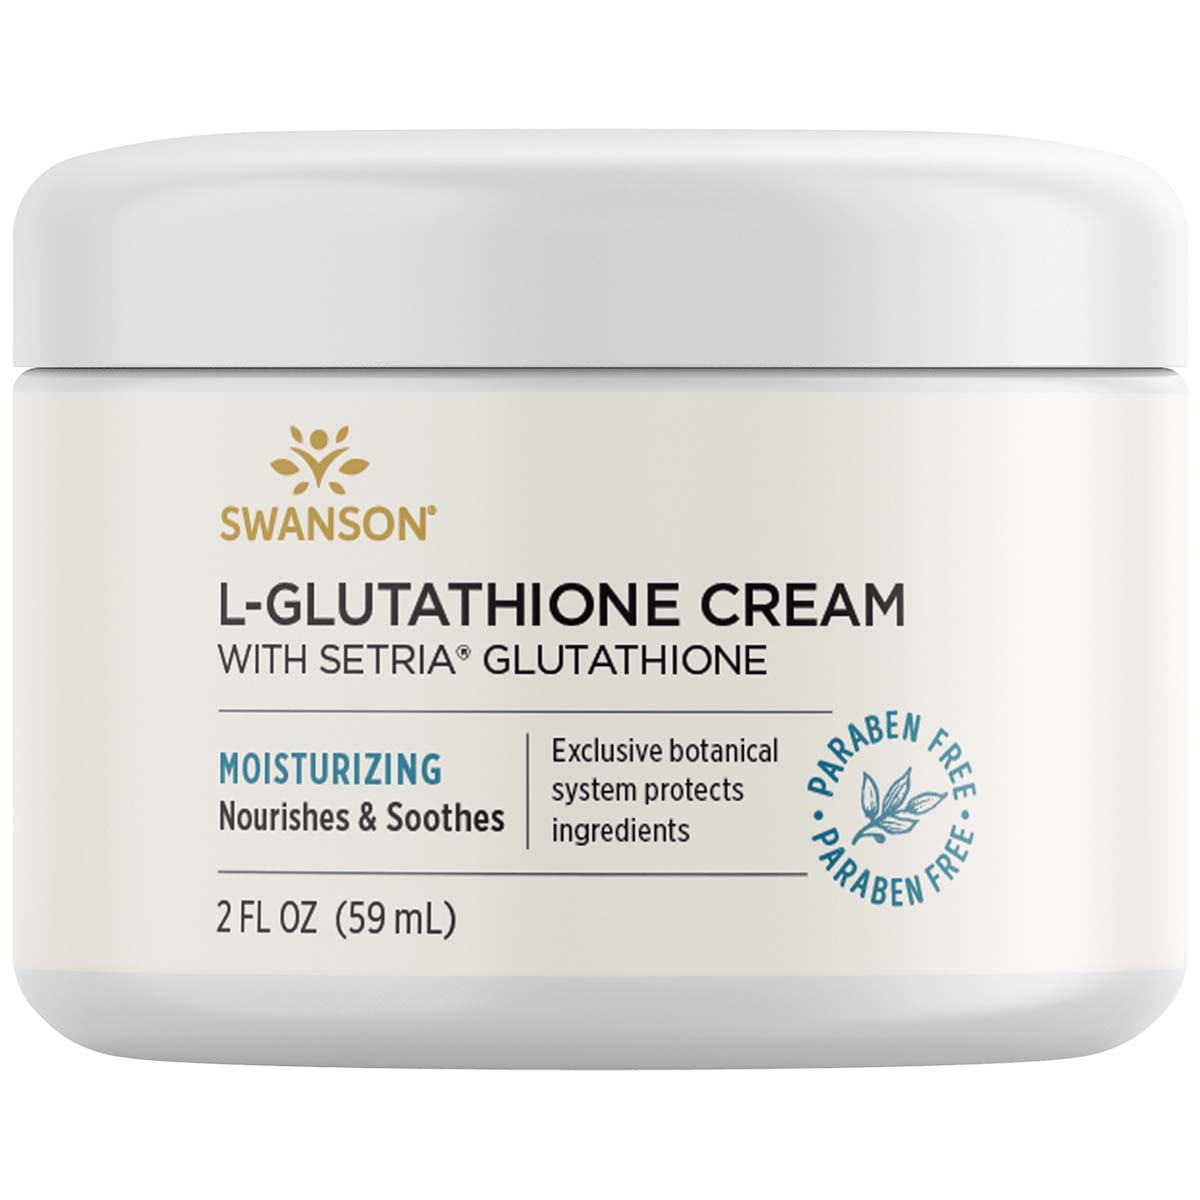 Swanson L-Glutathione Cream with Setria Glutathione, 59 ML